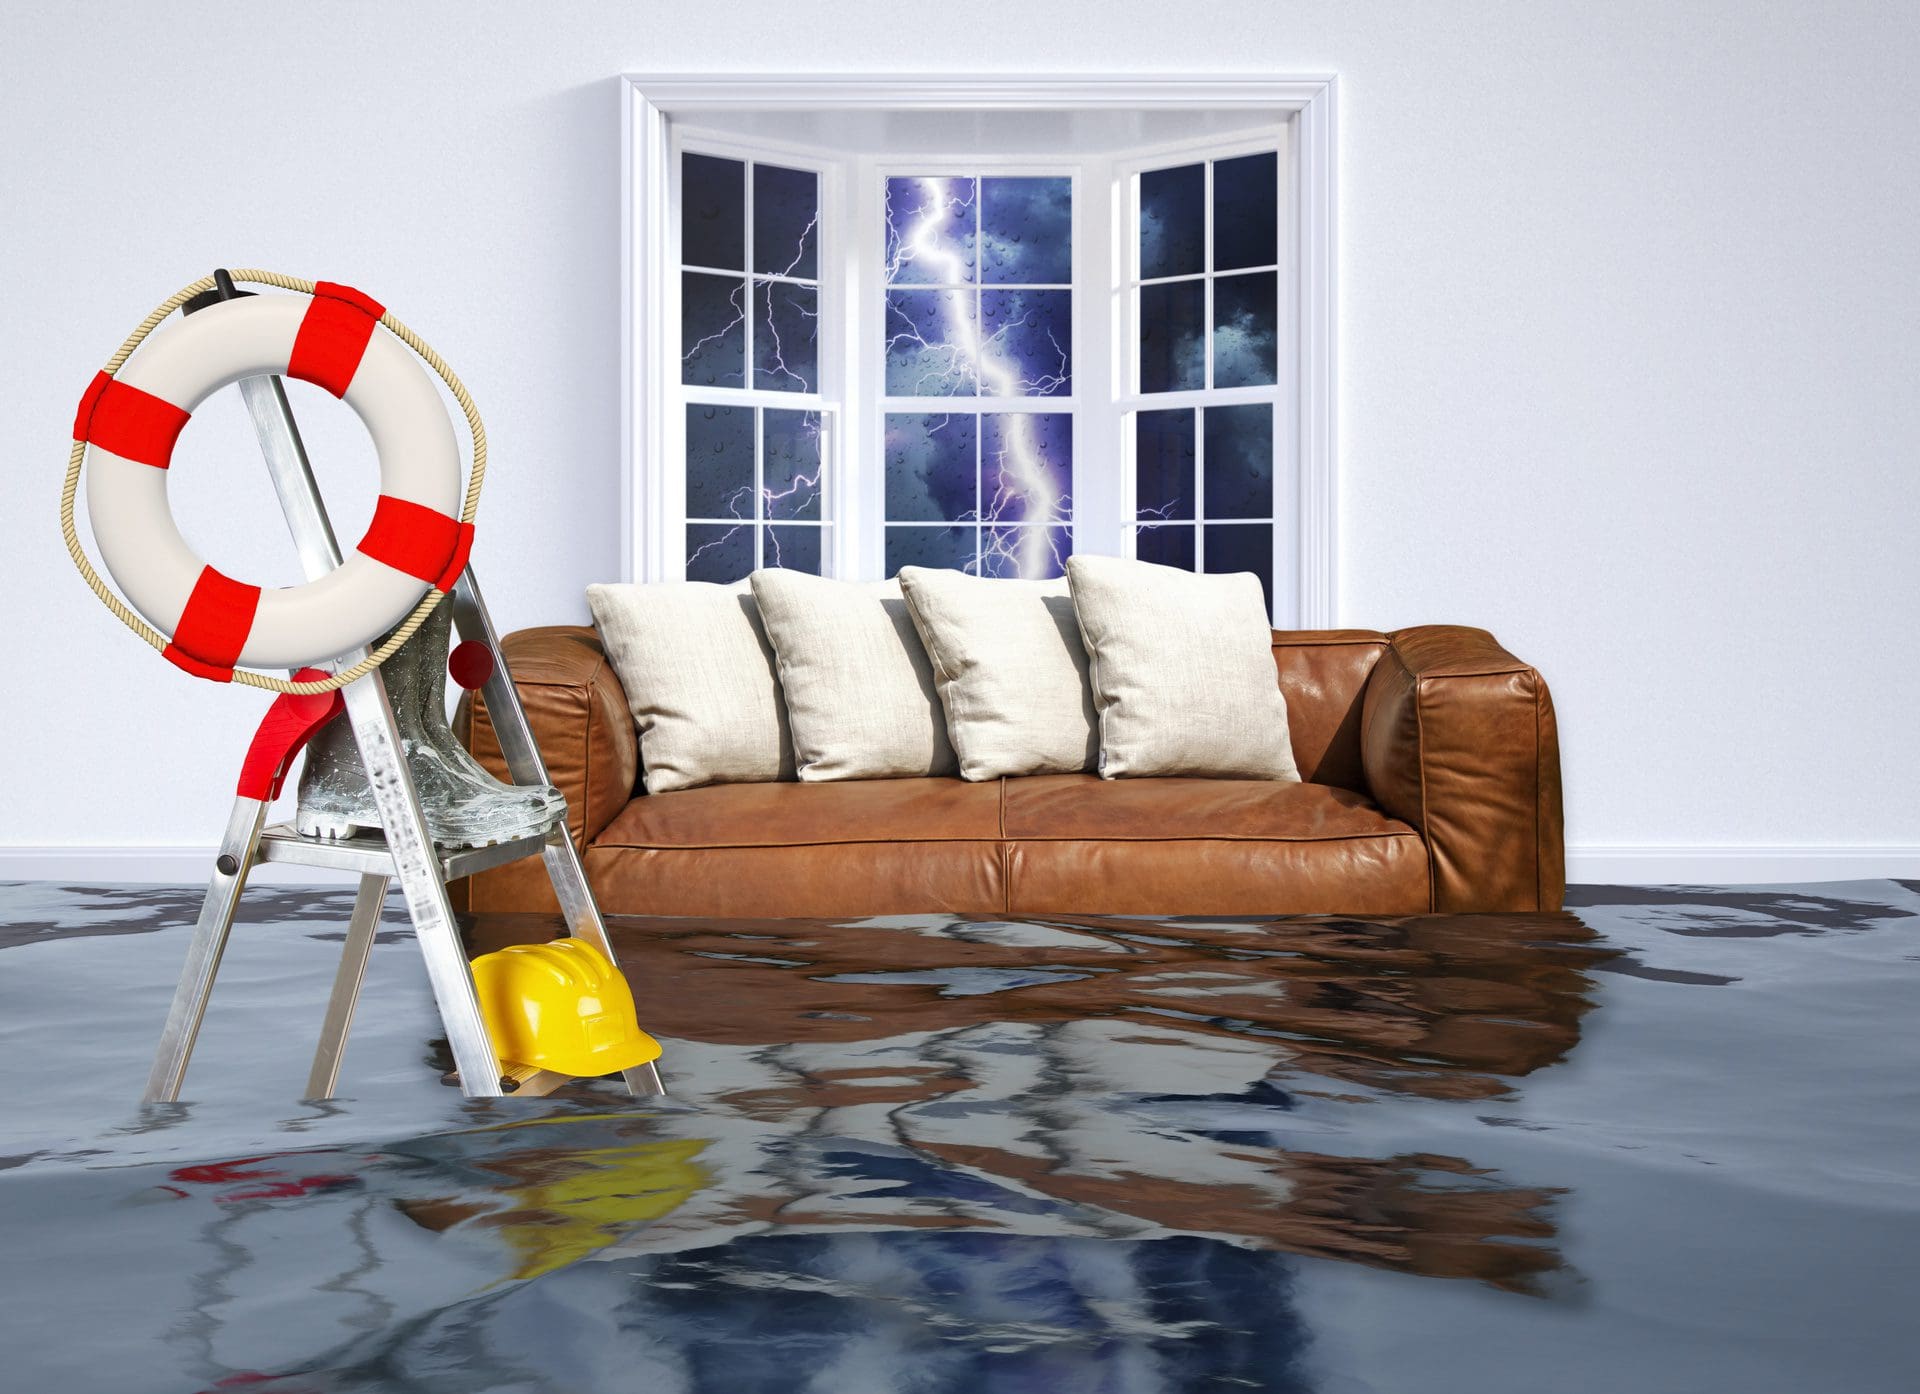 Hausrat + Hochwasser | Hochwasserschäden sind meist gleichermaßen Fälle für die Hausratversicherung und Gebäudeversicherung, beide jeweils in Verbindung mit Elementarschadenschutz als Zusatzoption (© Jürgen Fälchle / stock.adobe.com)